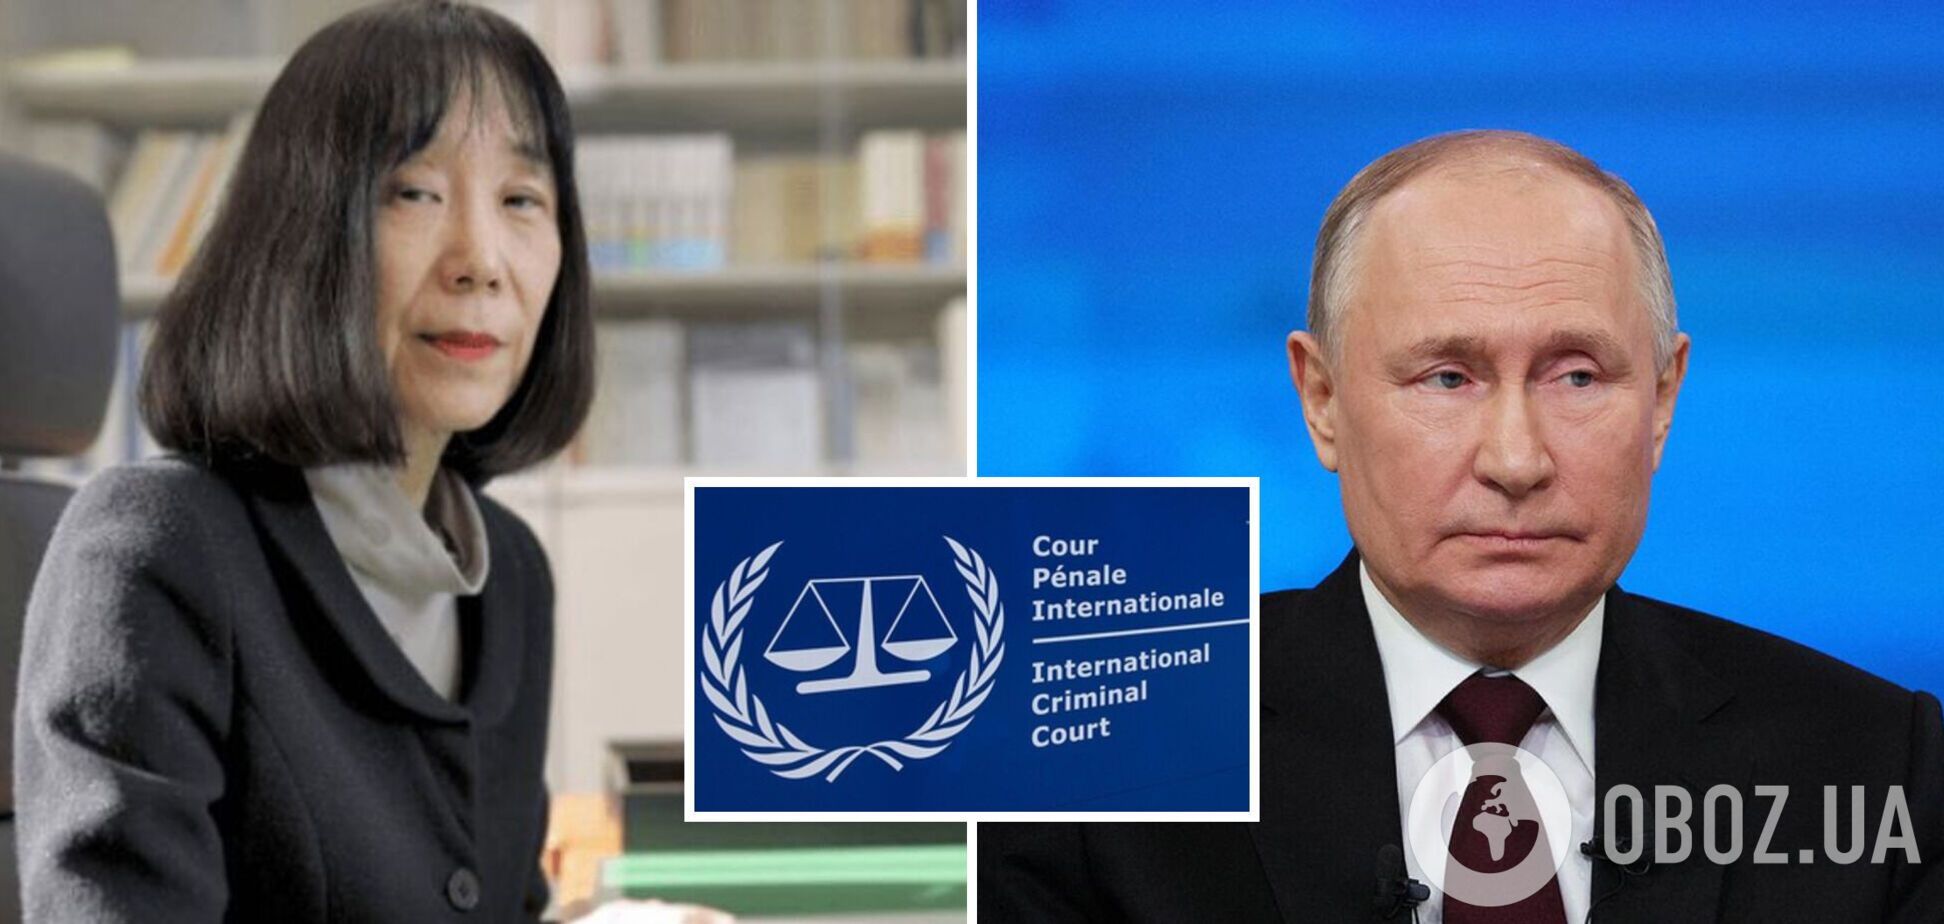 Международный уголовный суд в Гааге возглавила судья, выдавшая ордер на арест Путина